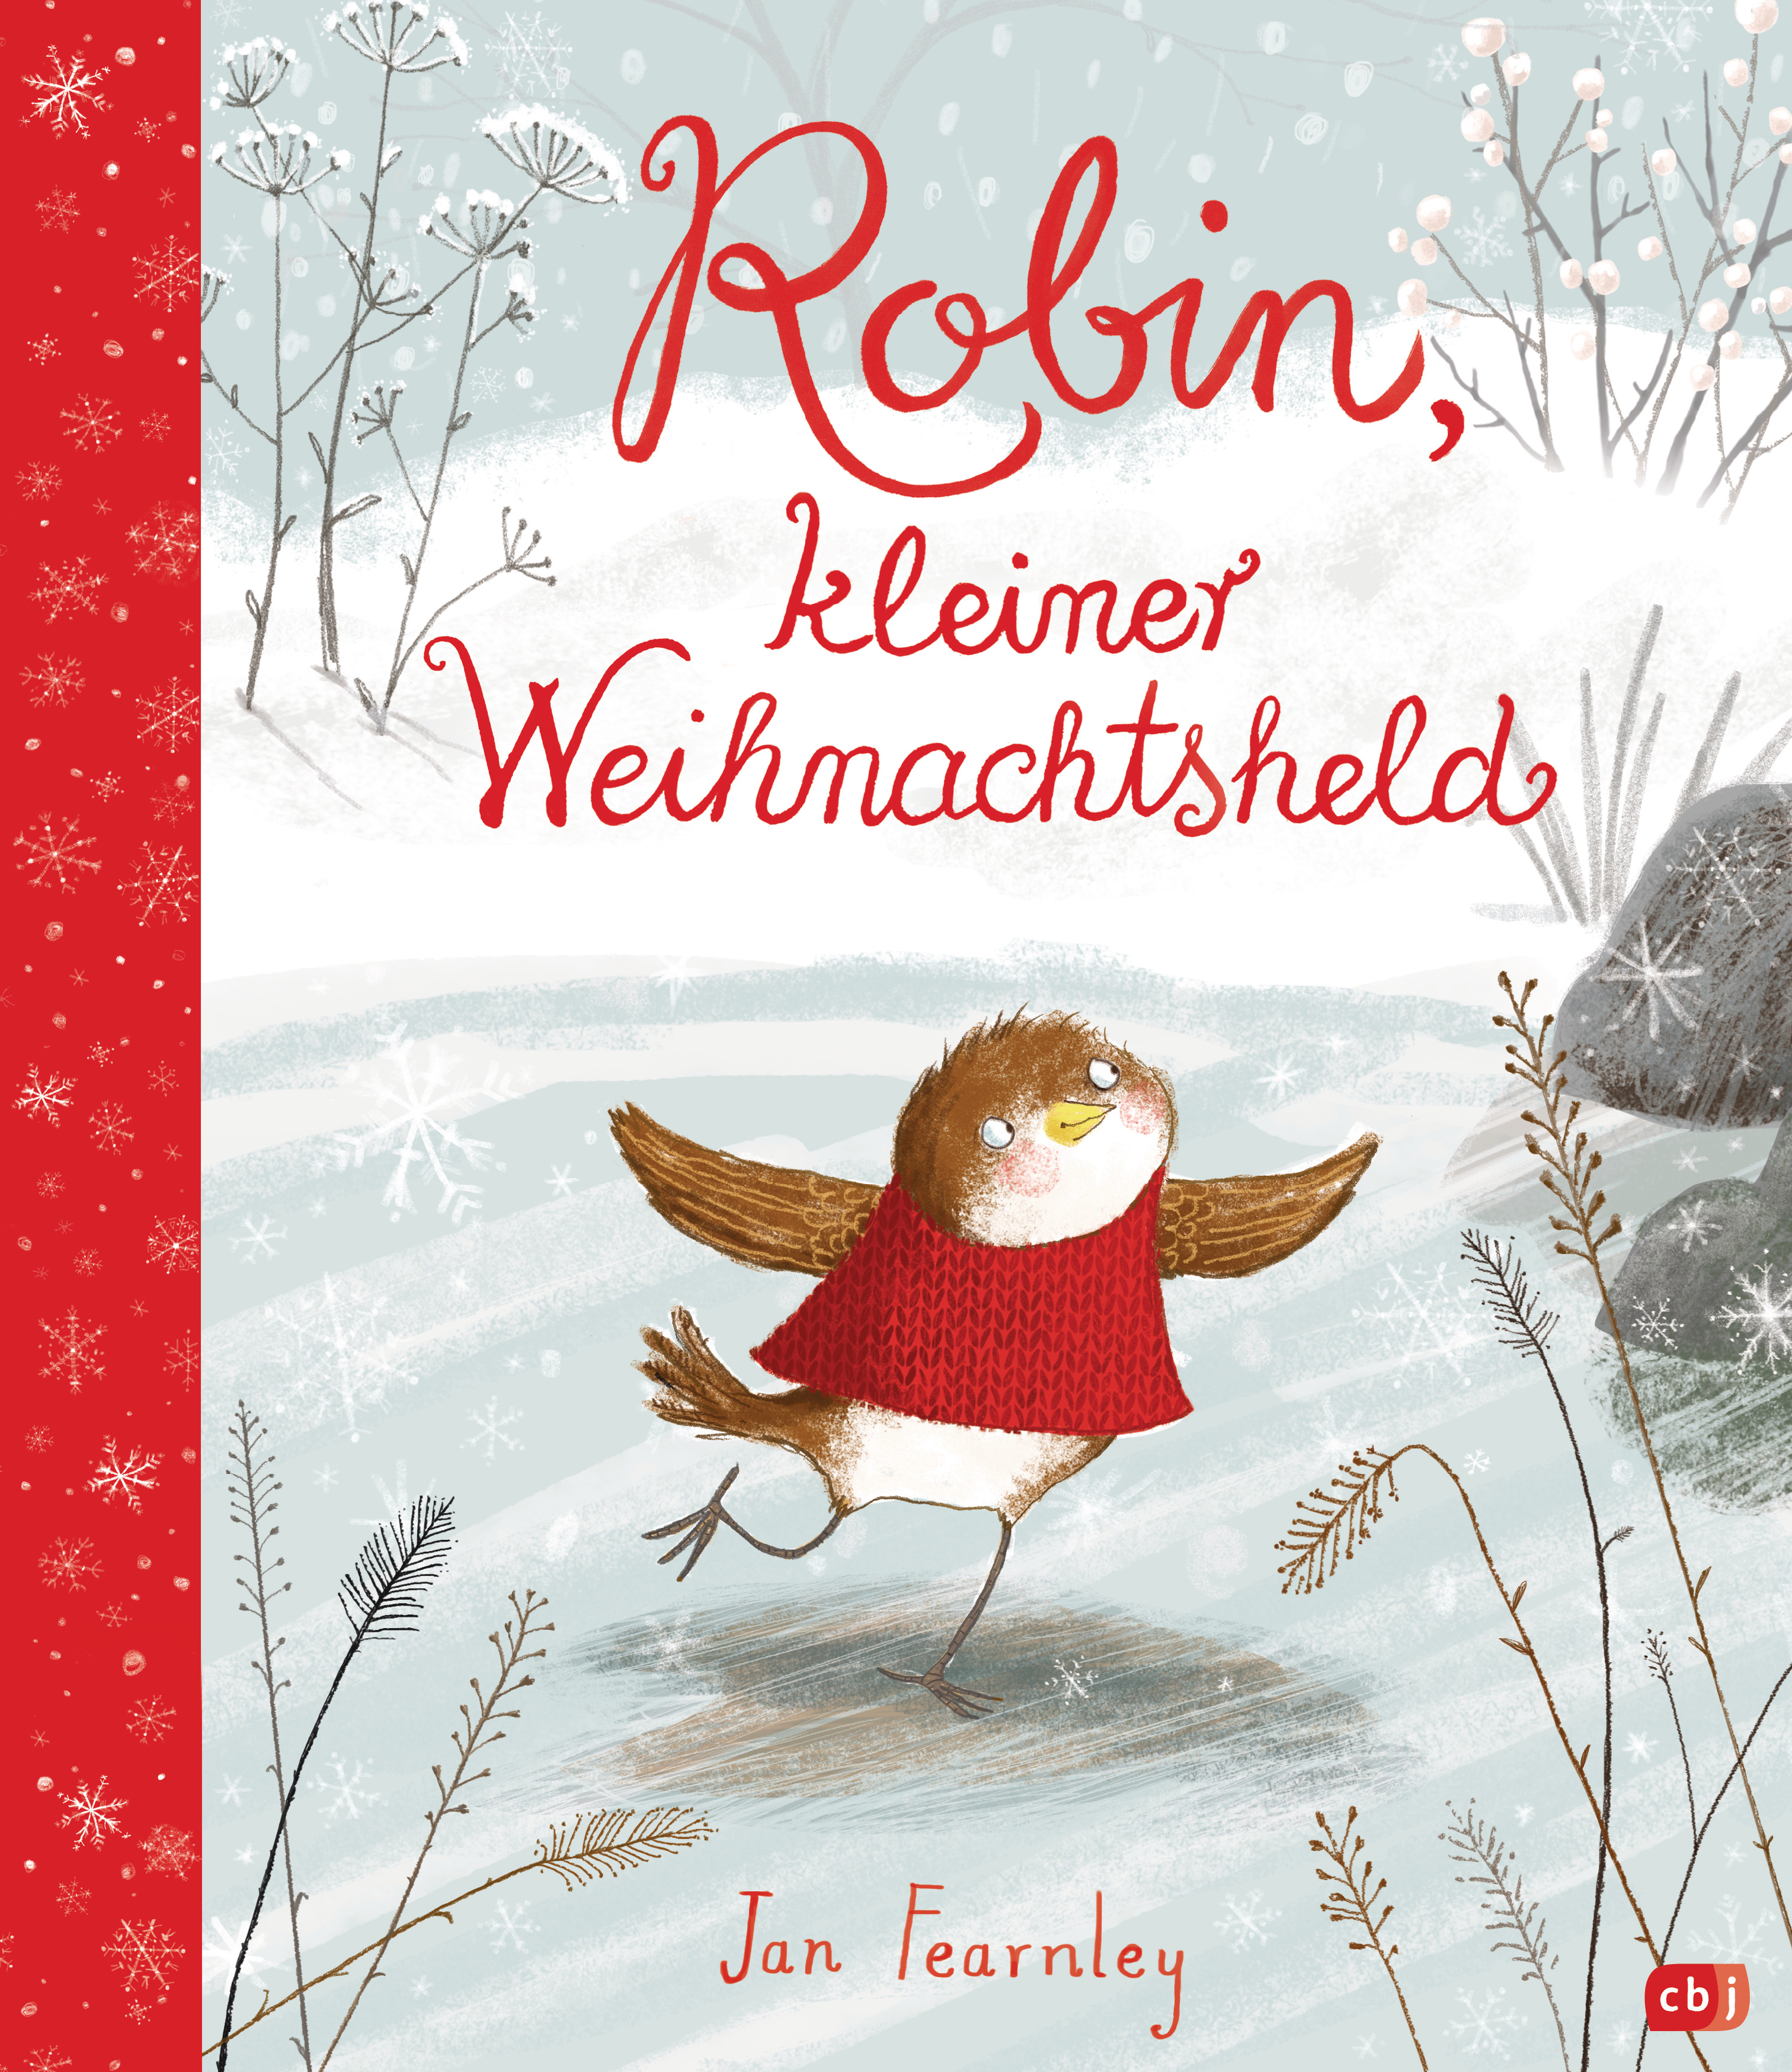 Buchcover "Robin, kleiner Weihnachtsheld", cbj